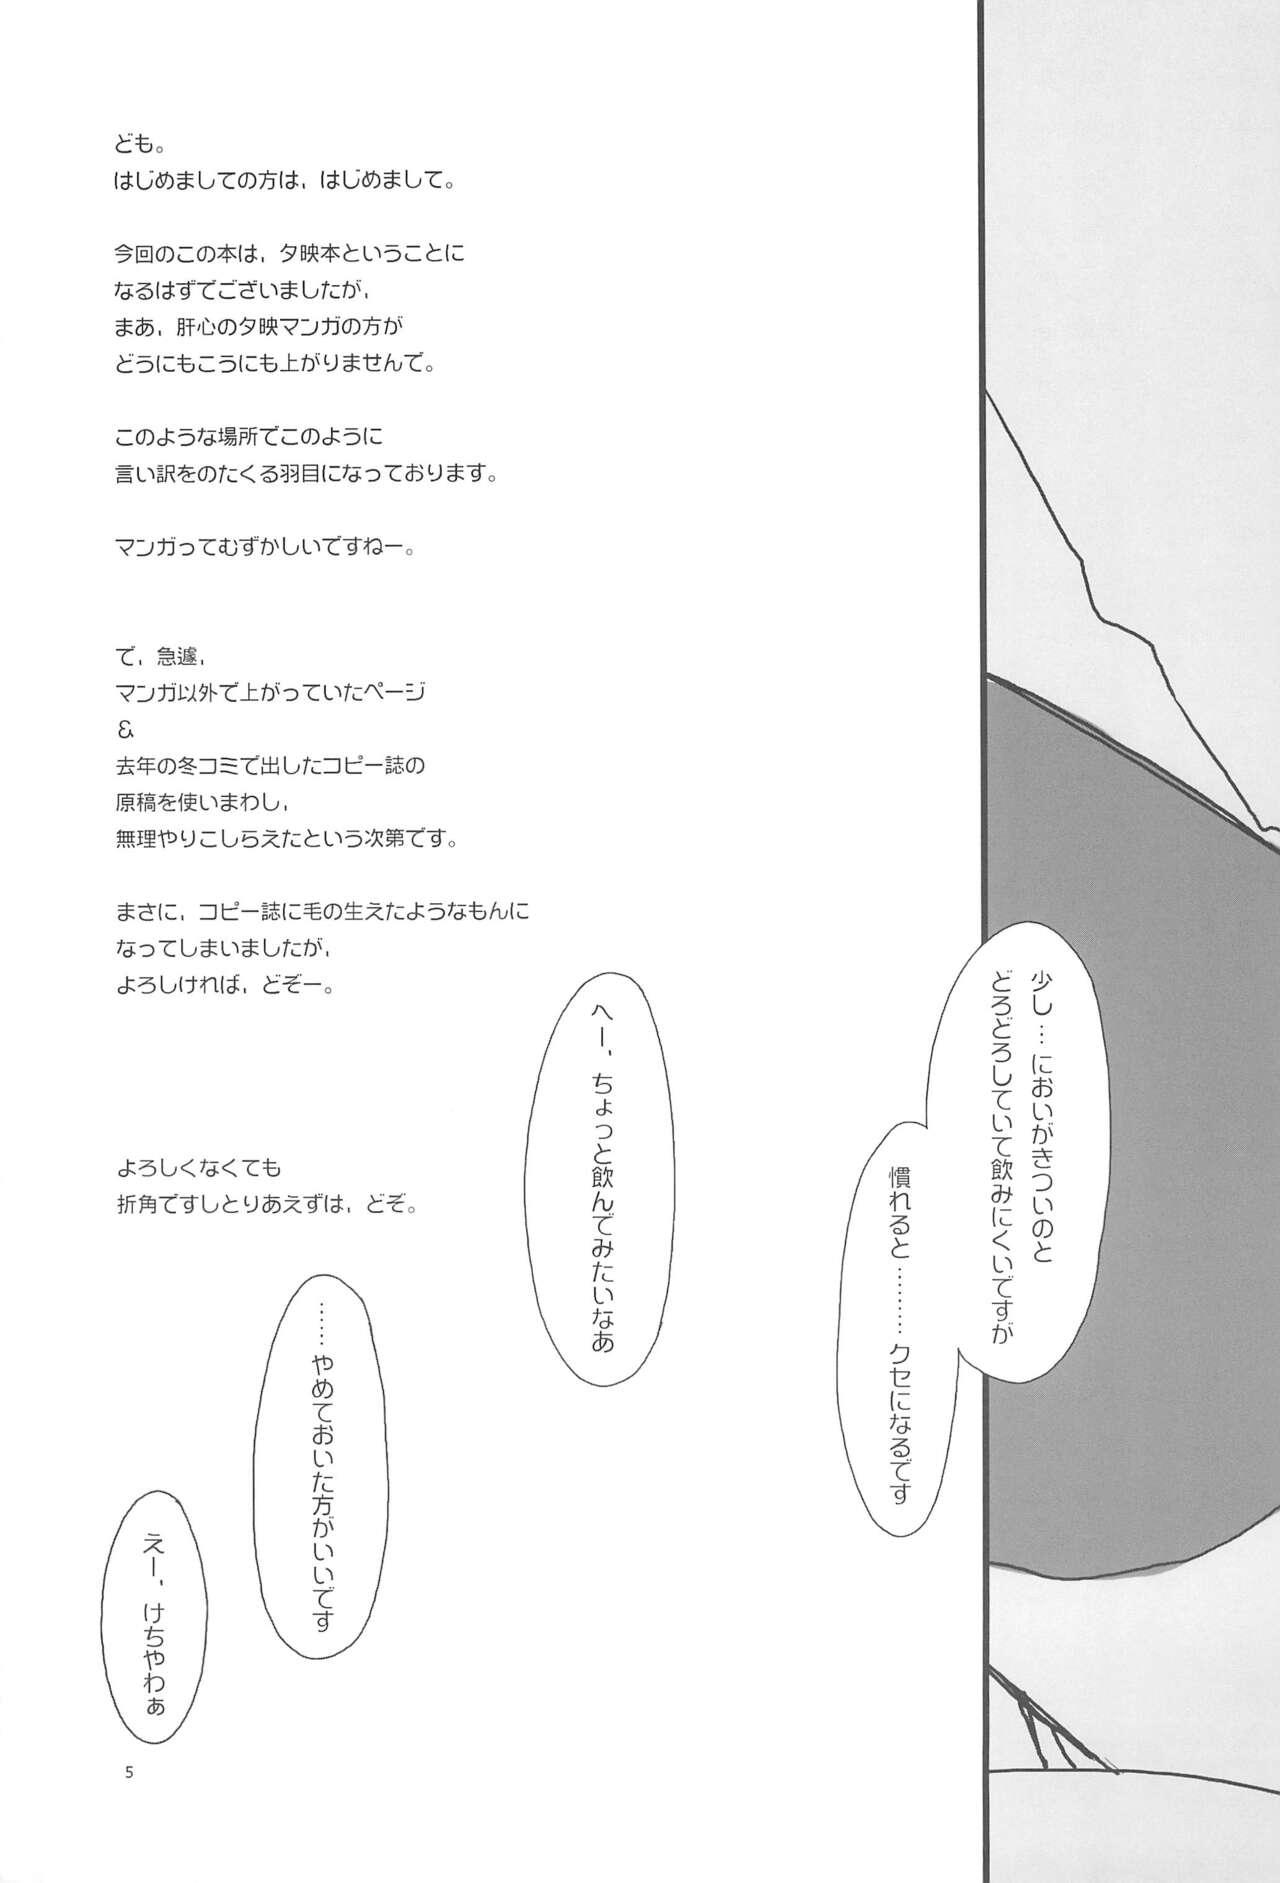 Cock Suckers Magic Love Potion #9 - Mahou sensei negima Olderwoman - Page 7